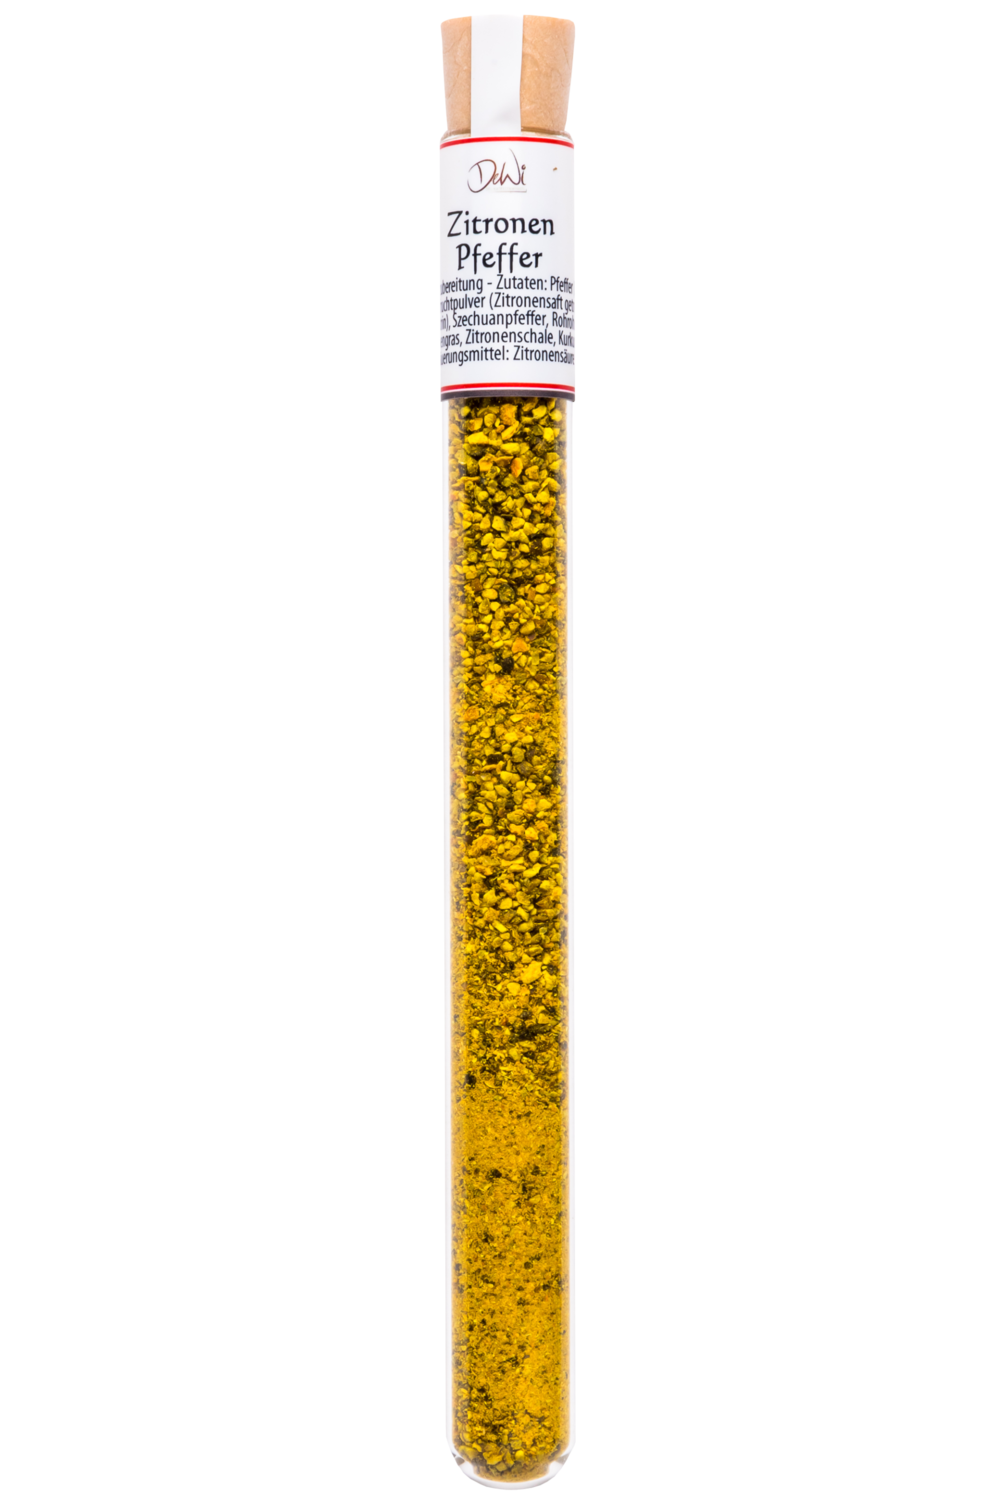 Zitronenpfeffer im Reagenzglas - Inhalt 11 g (268,20 €/kg)